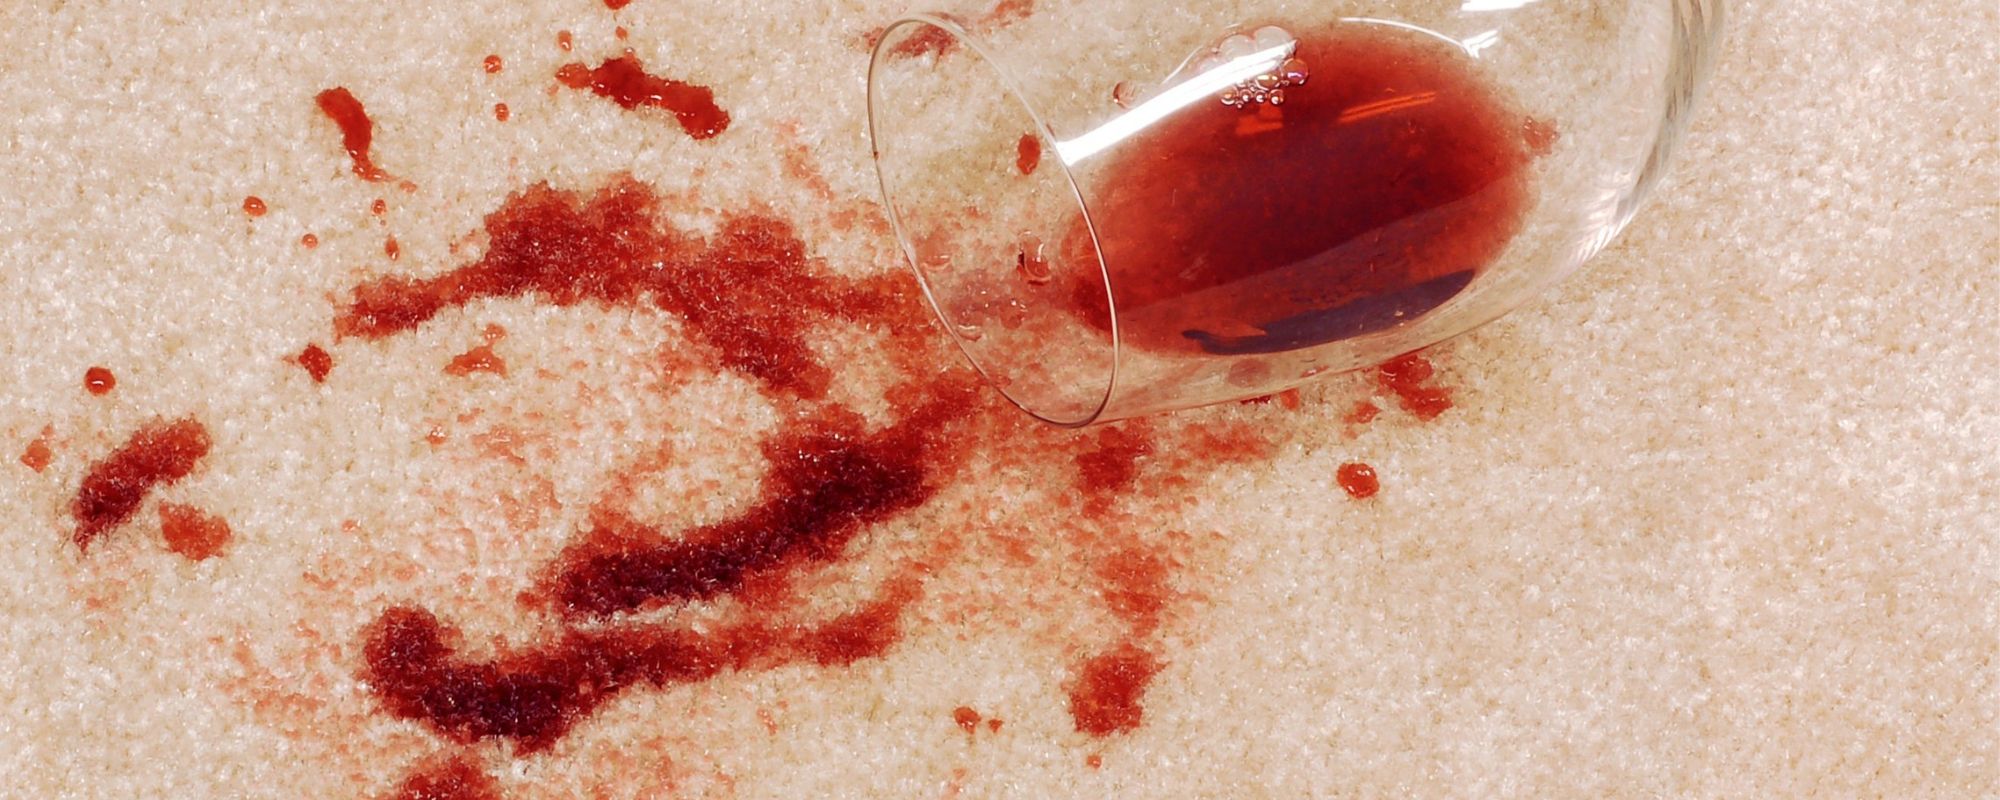 Red wine spilled on beige carpet.